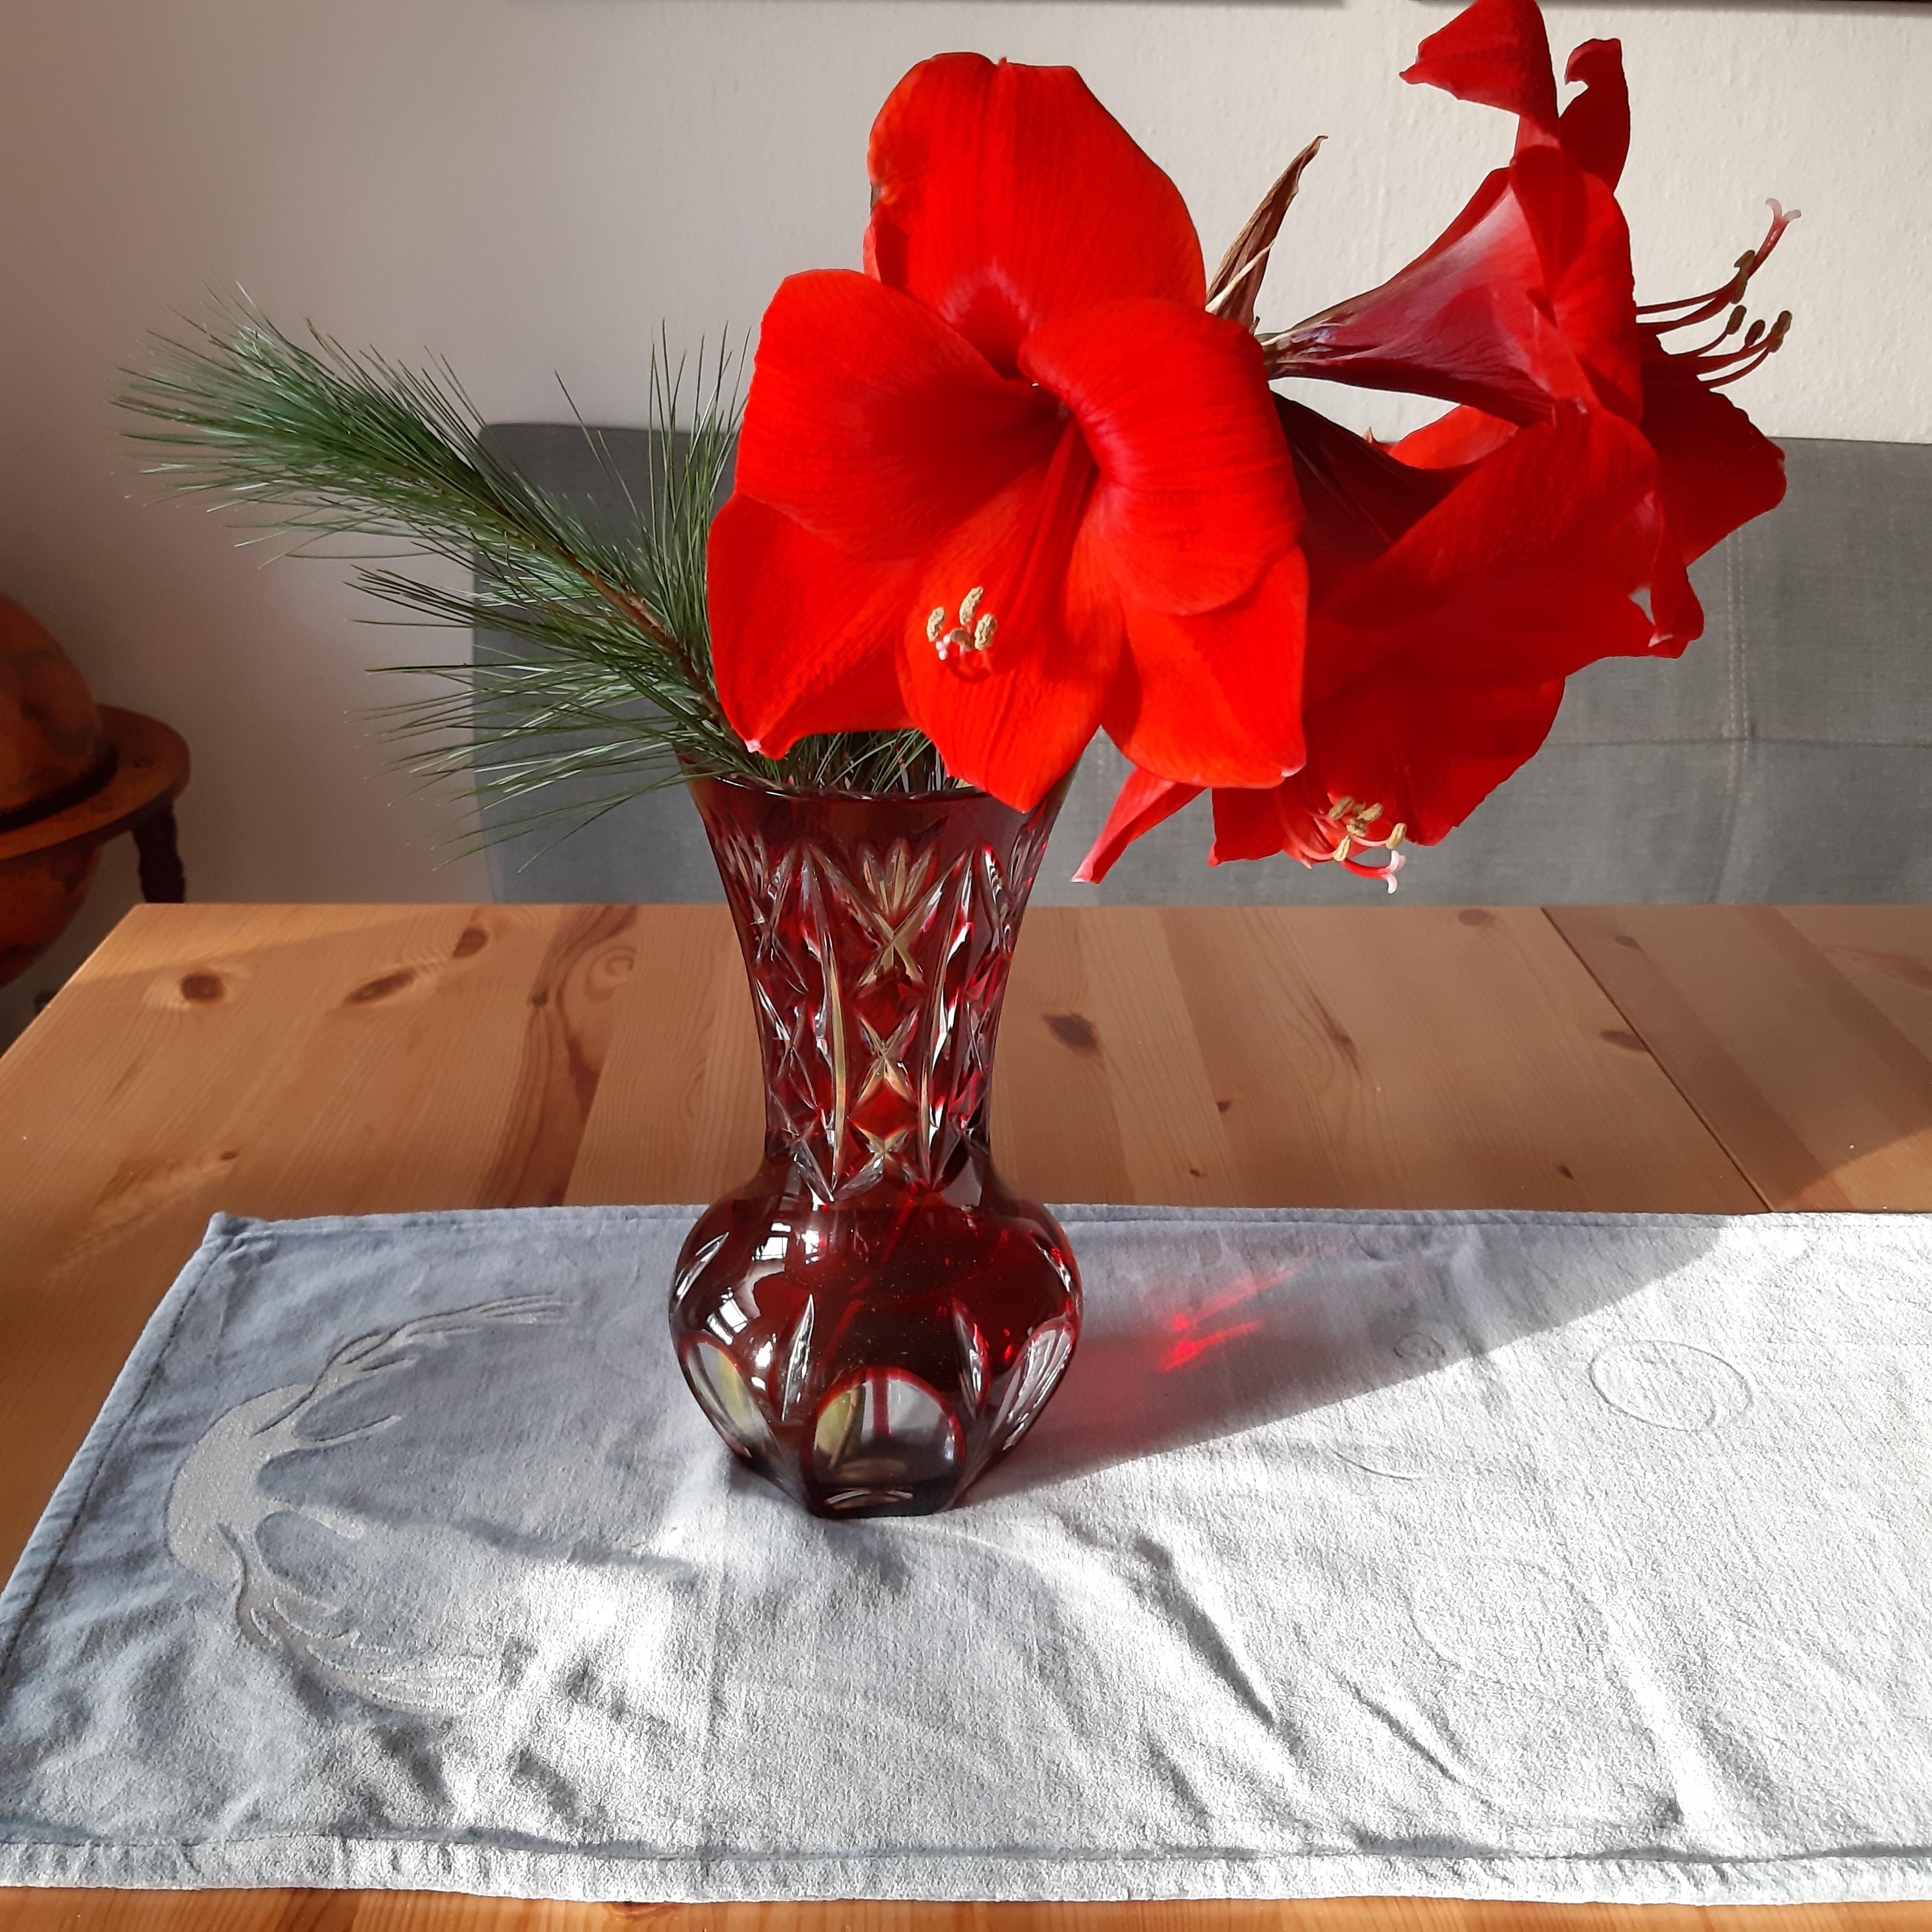 Die #amaryllis darf bei mir im Winter nicht fehlen. In der #vase von Oma macht sie sich doch gut. 